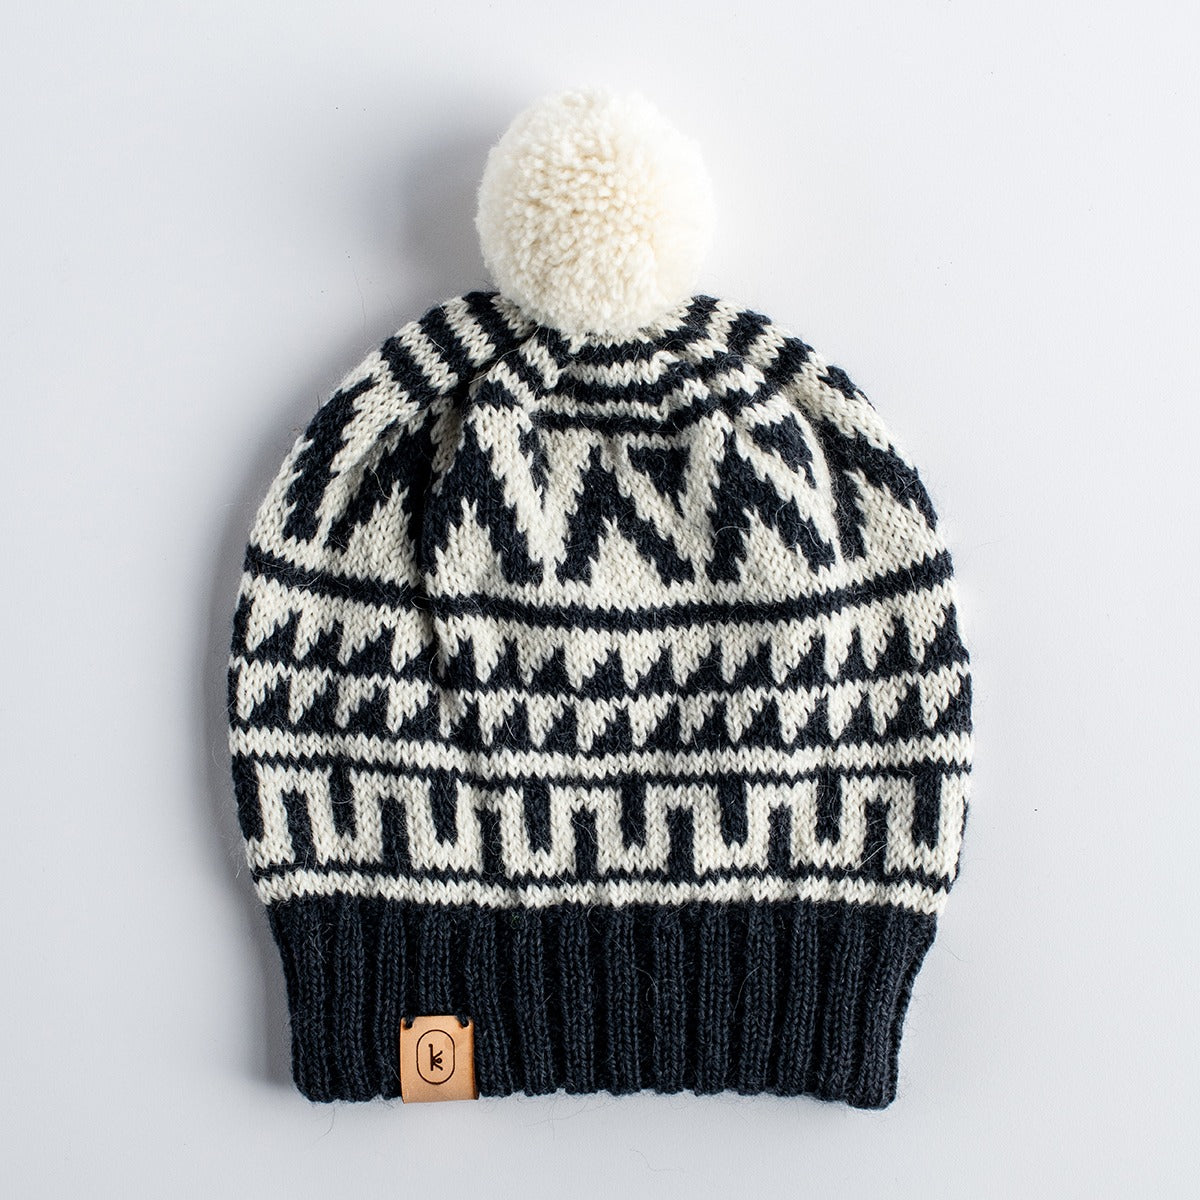 Kelbourne Woolens Patterns Snowdrop Hat Pattern